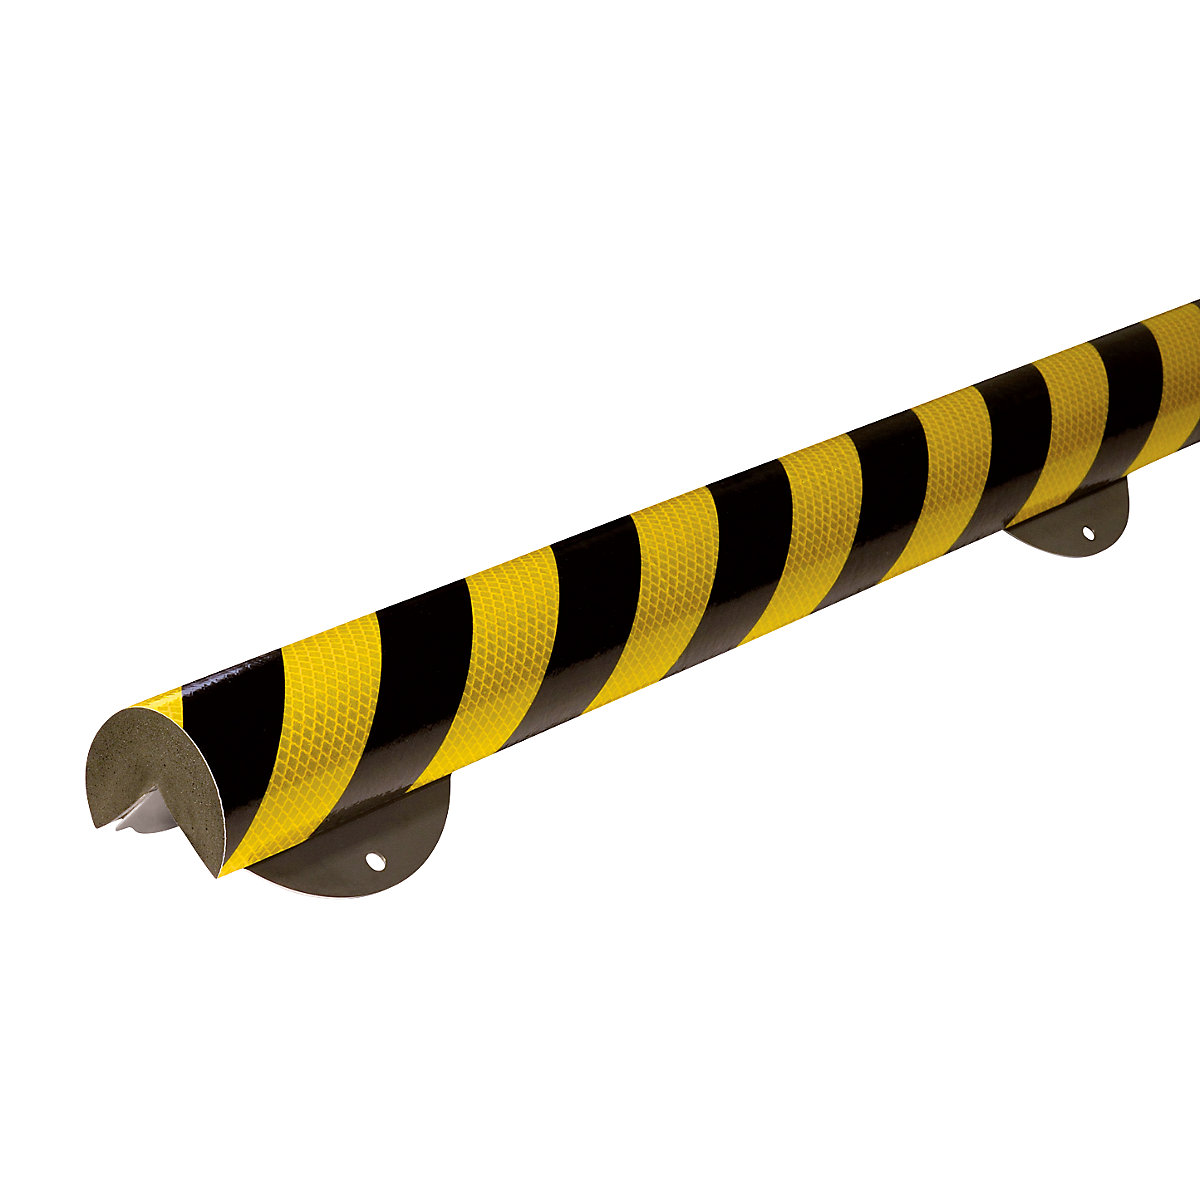 Knuffi® hoekbescherming met montagerail – SHG, type A+, stuk van 1 m, zwart/geel, reflecterend-13